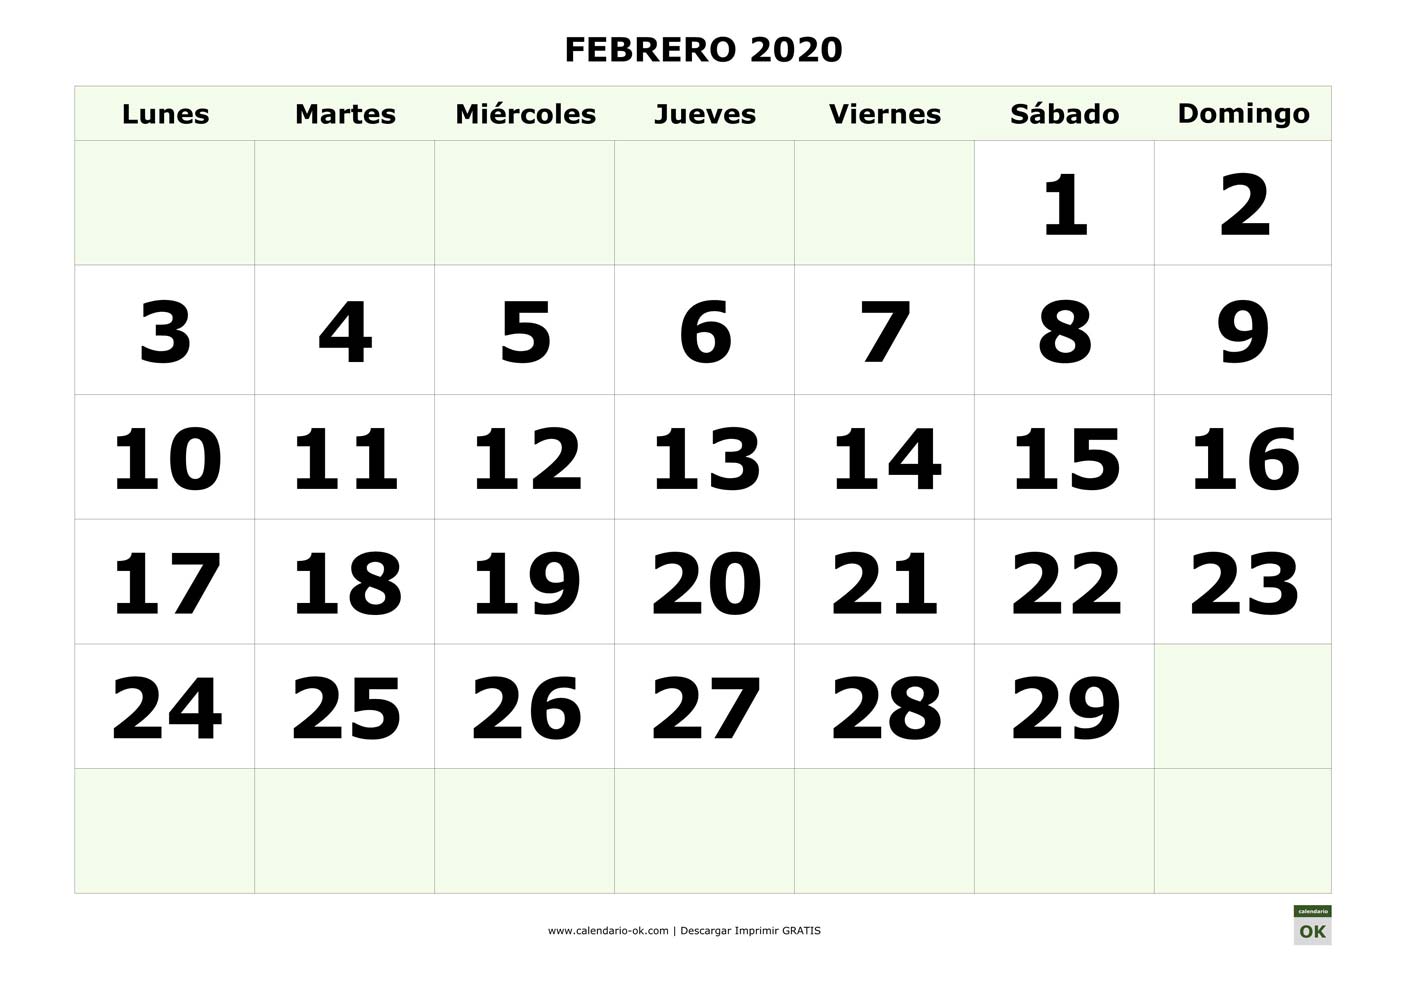 FEBRERO 2020 con NUMEROS GRANDES